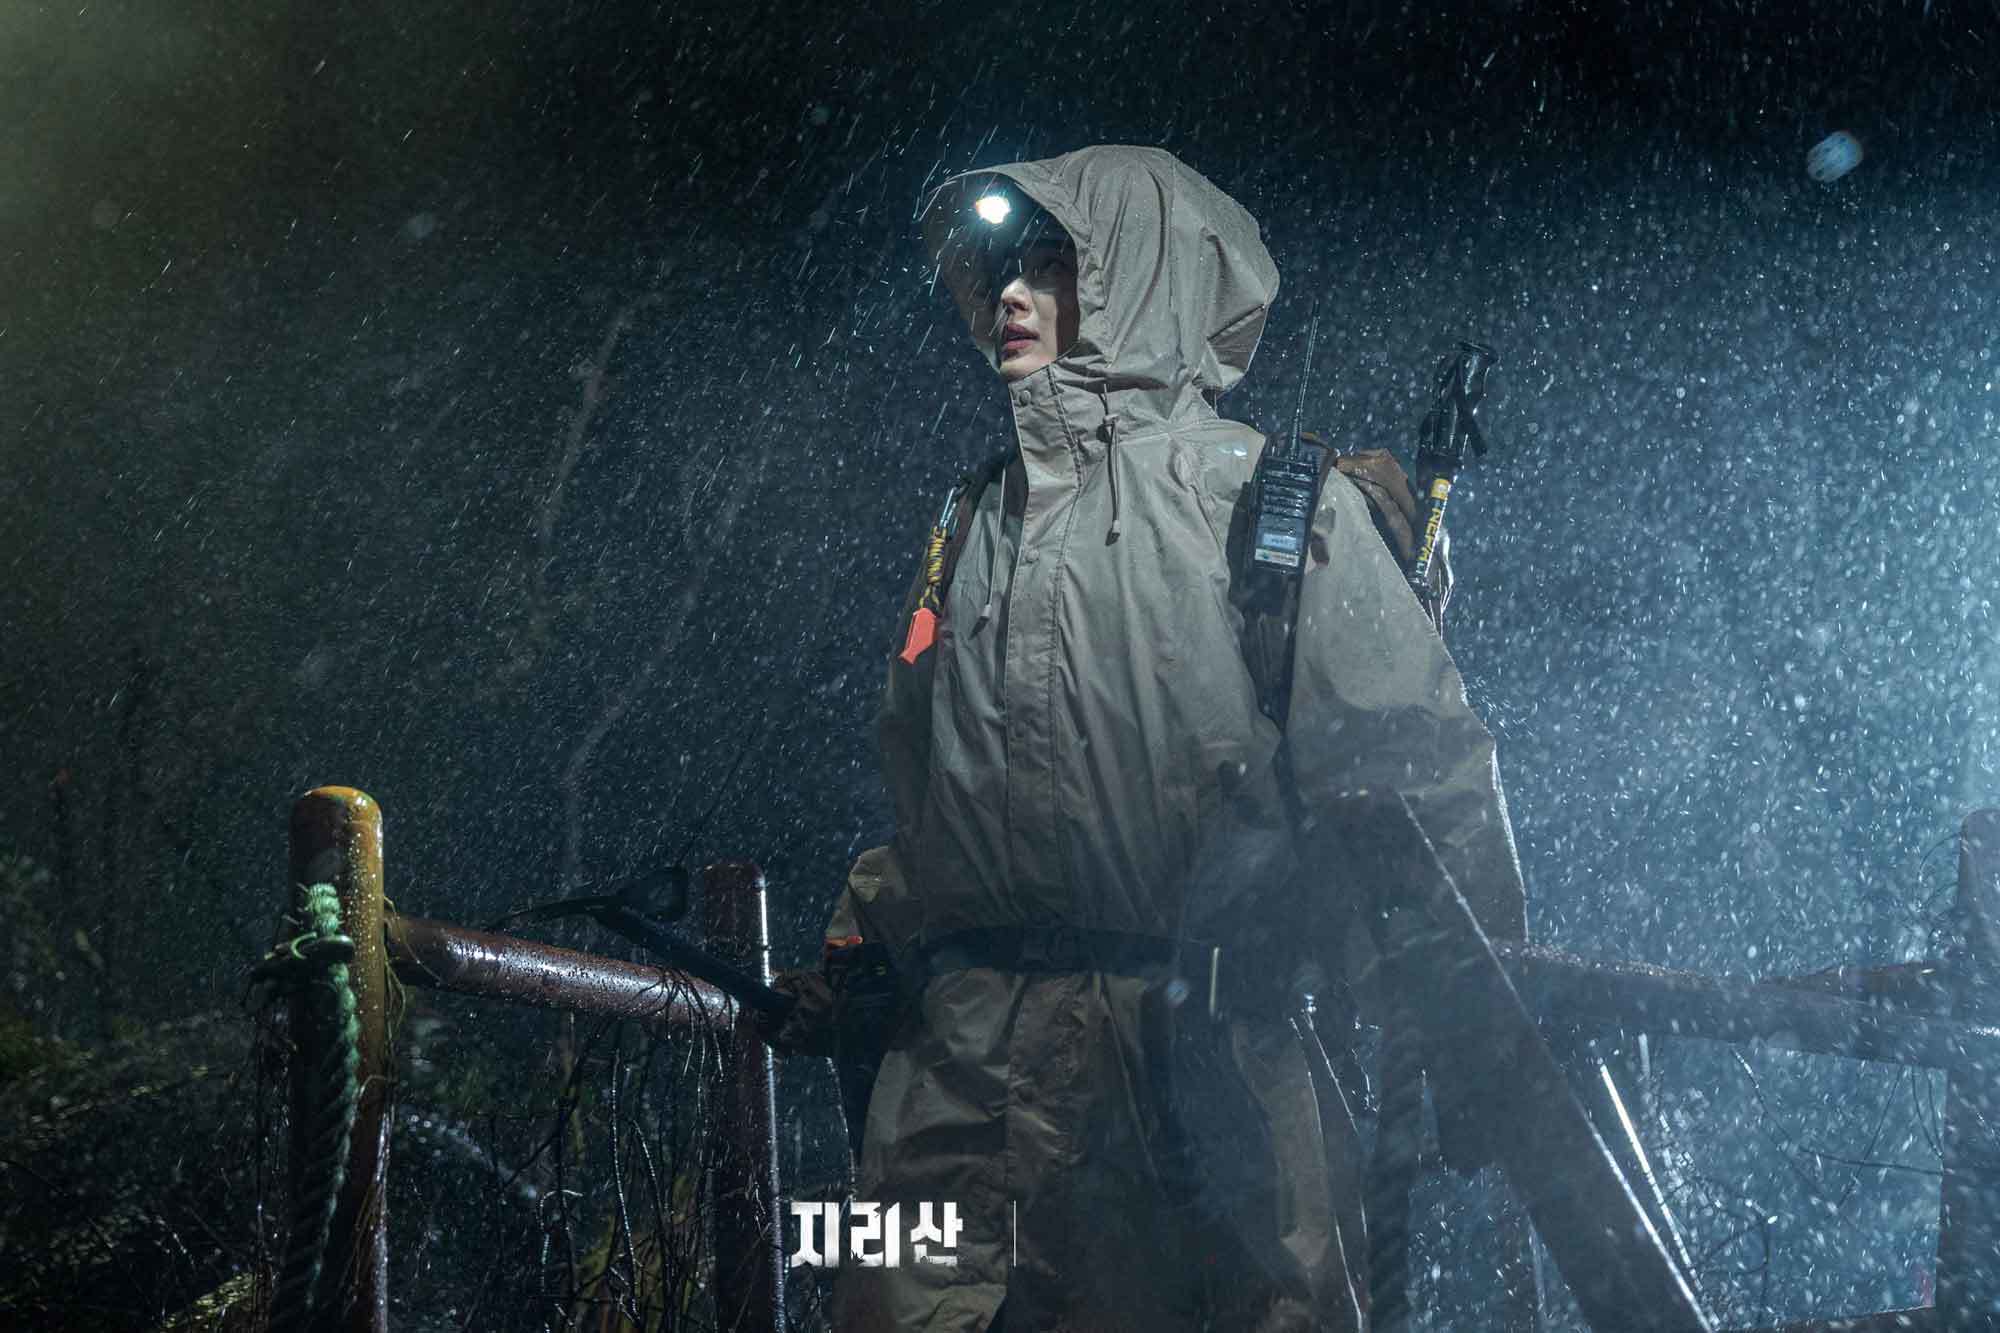 Hình ảnh gai góc của 'mợ chảnh' Jun Ji Hyun trong phim mới